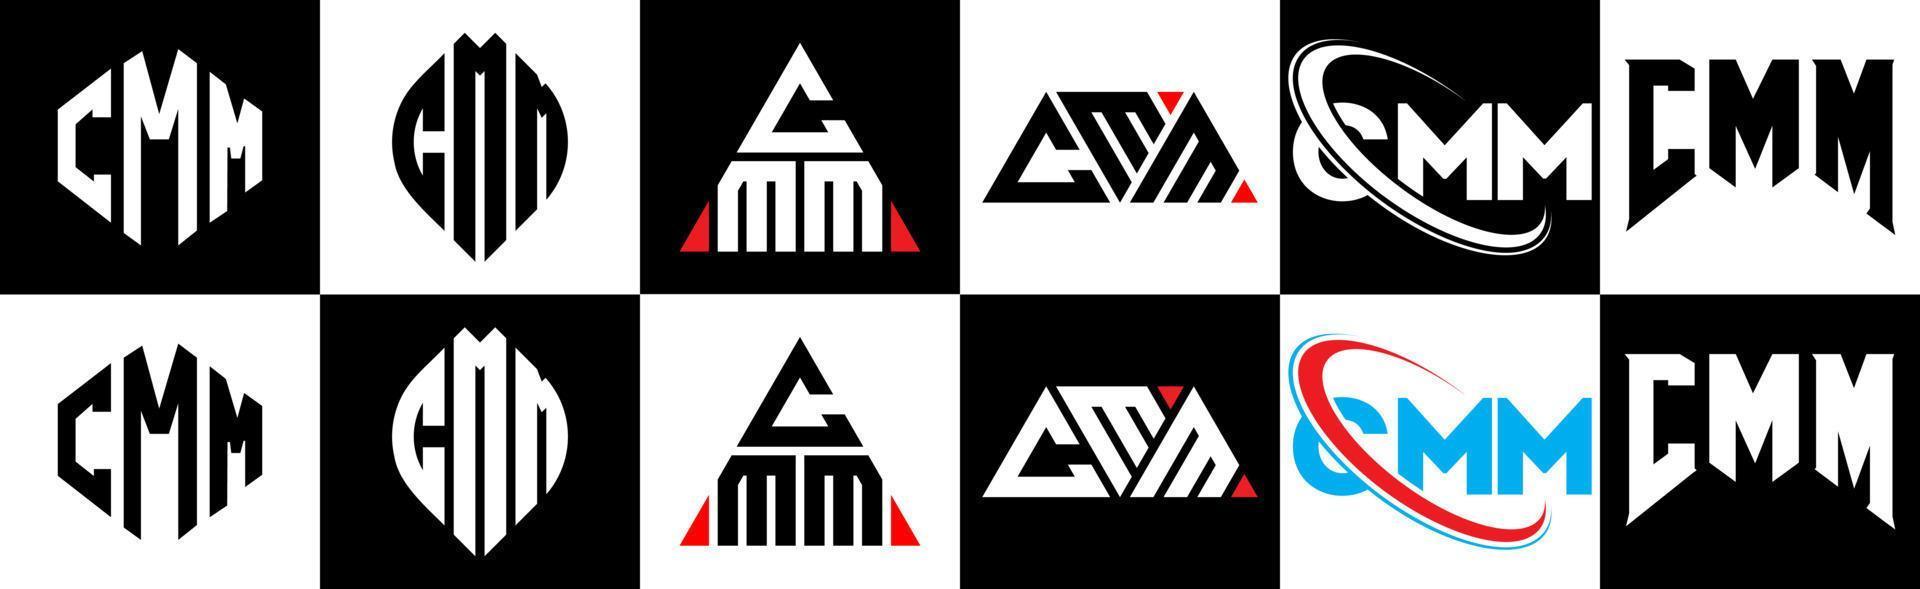 création de logo de lettre cmm en six styles. cmm polygone, cercle, triangle, hexagone, style plat et simple avec logo de lettre de variation de couleur noir et blanc dans un plan de travail. cmm logo minimaliste et classique vecteur